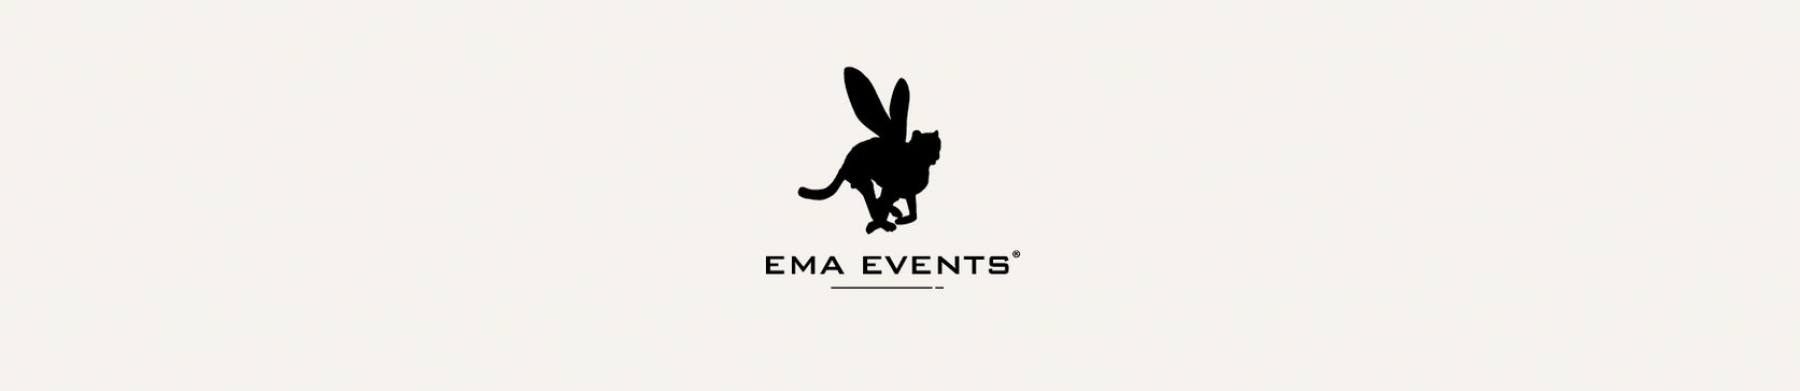 Bannière EMA events presta